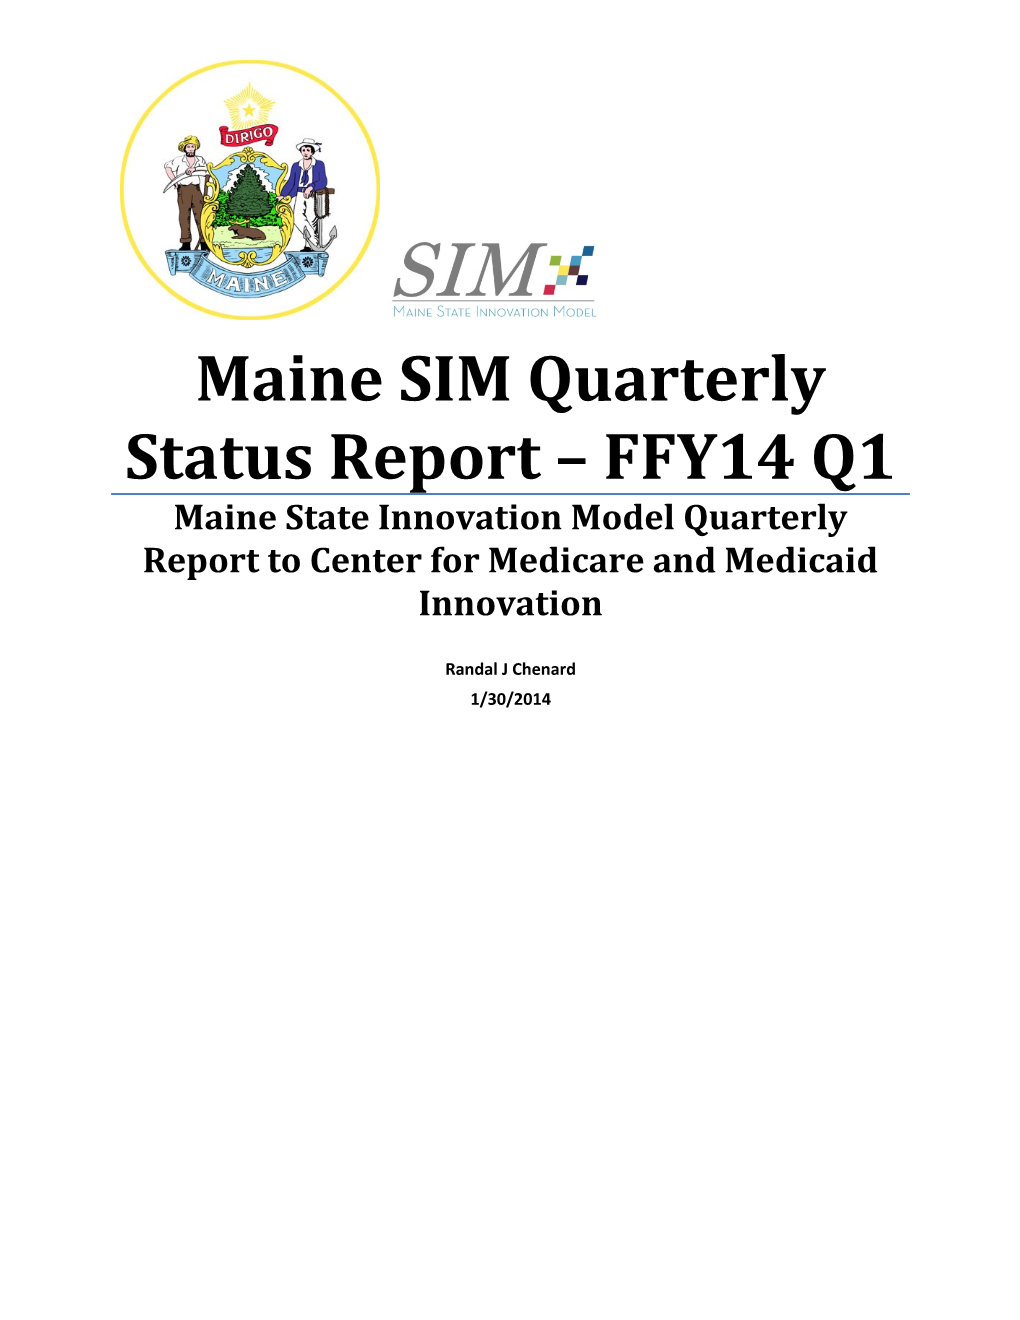 Maine SIM Quarterly Status Report FFY14 Q1